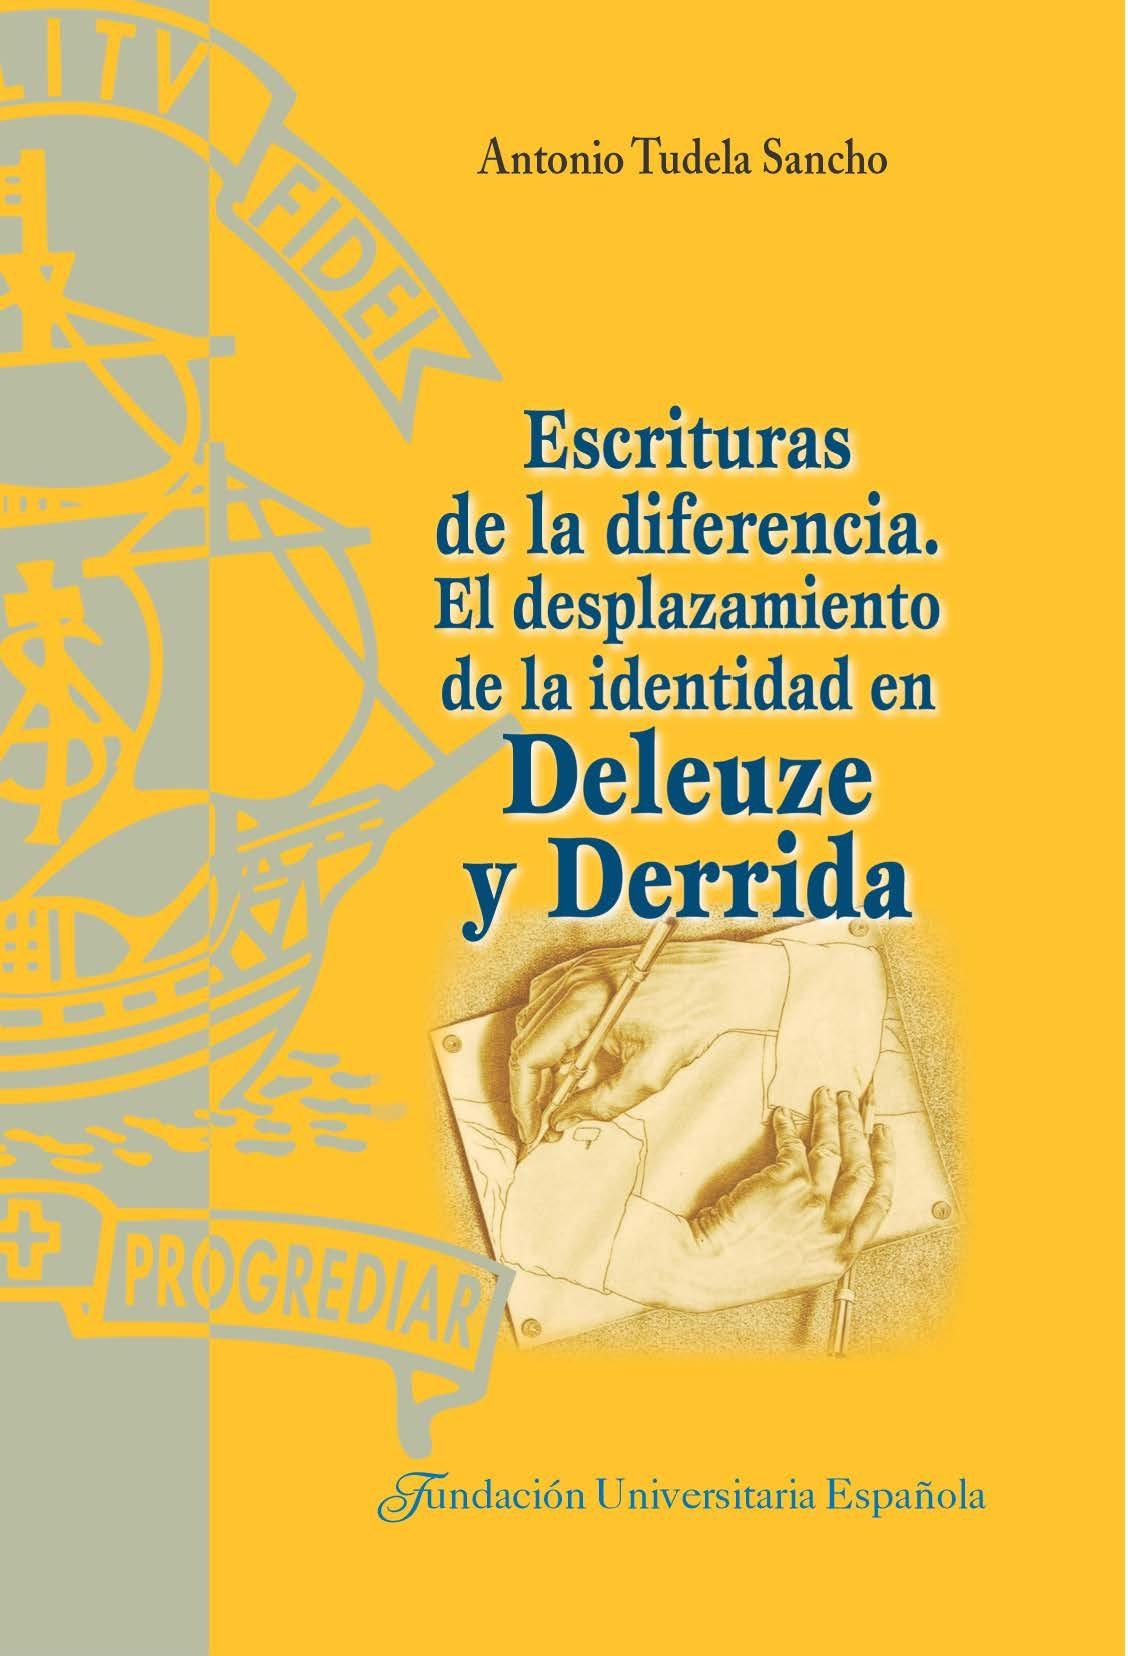 Escrituras de la diferencia "El desplazamiento de la identidad en Deleuze y Derrida". 